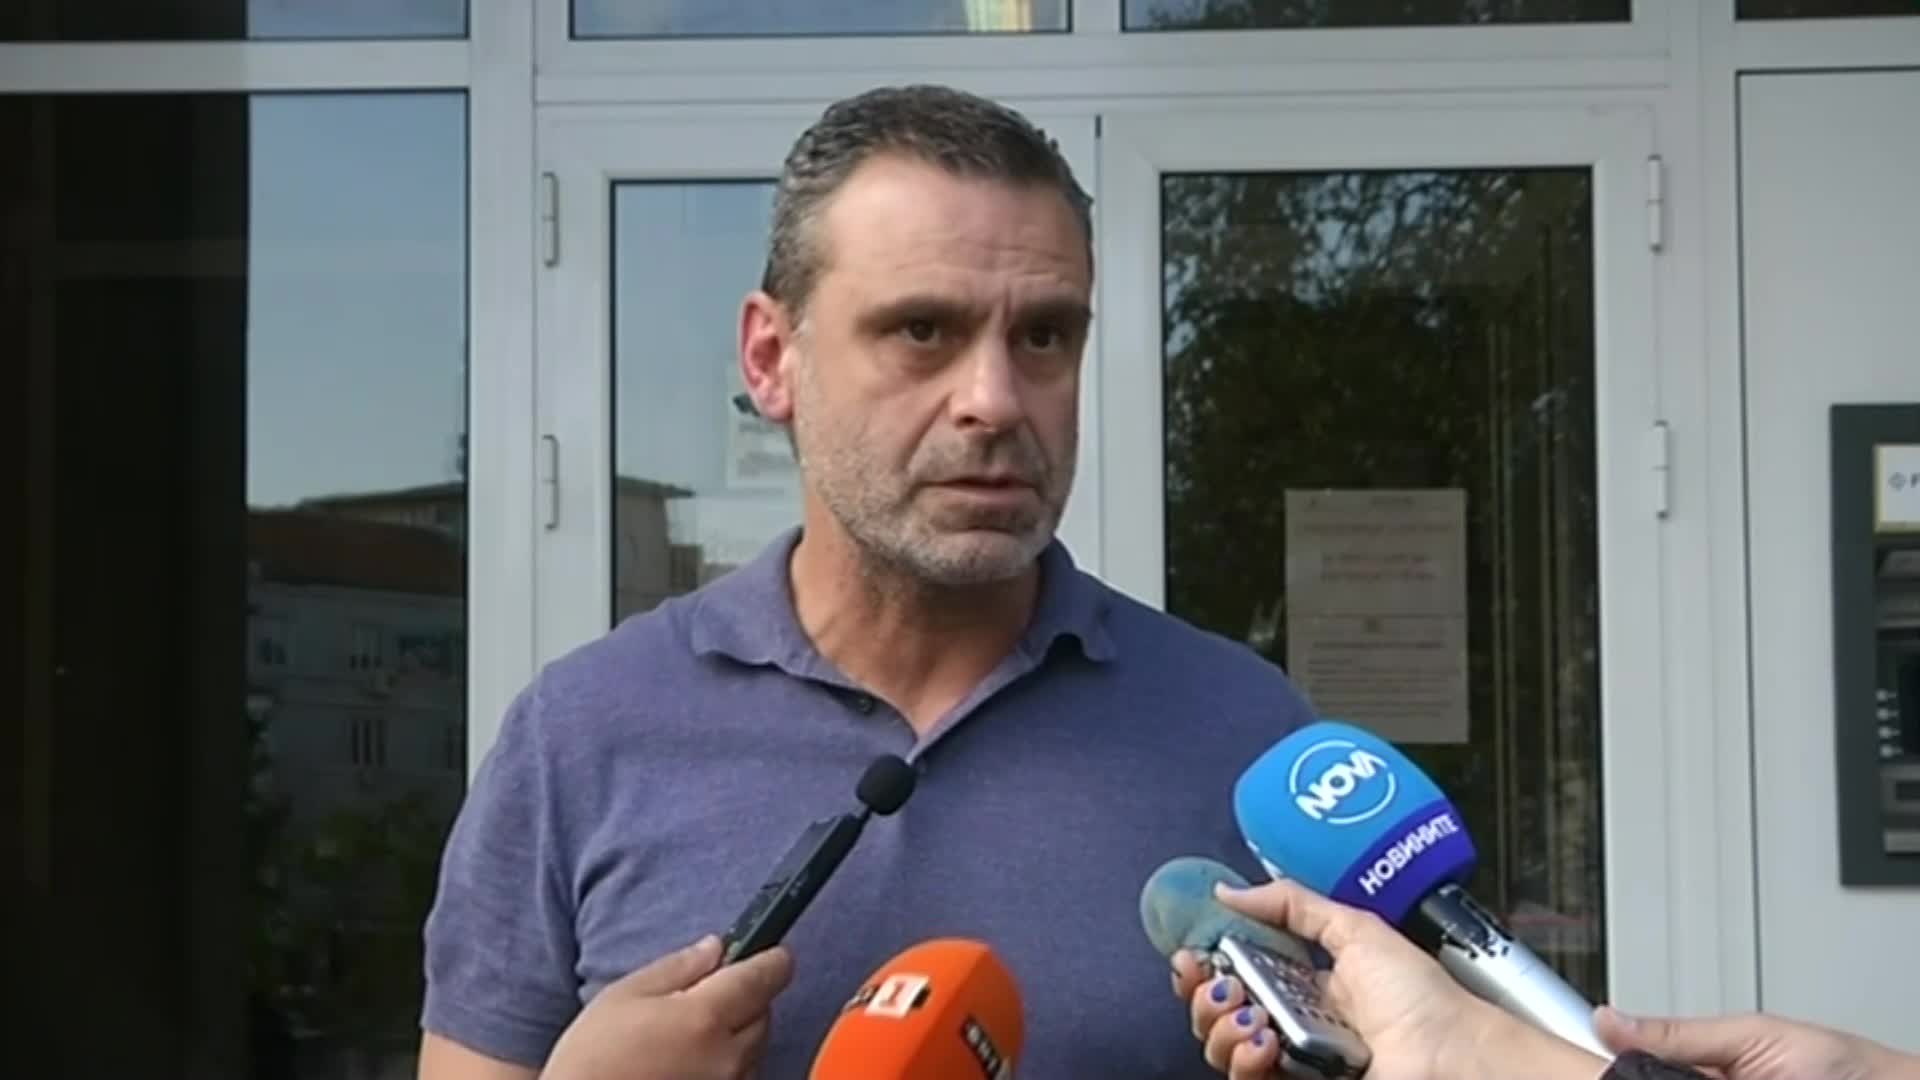 Разбиха група за кредитни измами във Варна, четирима са задържани